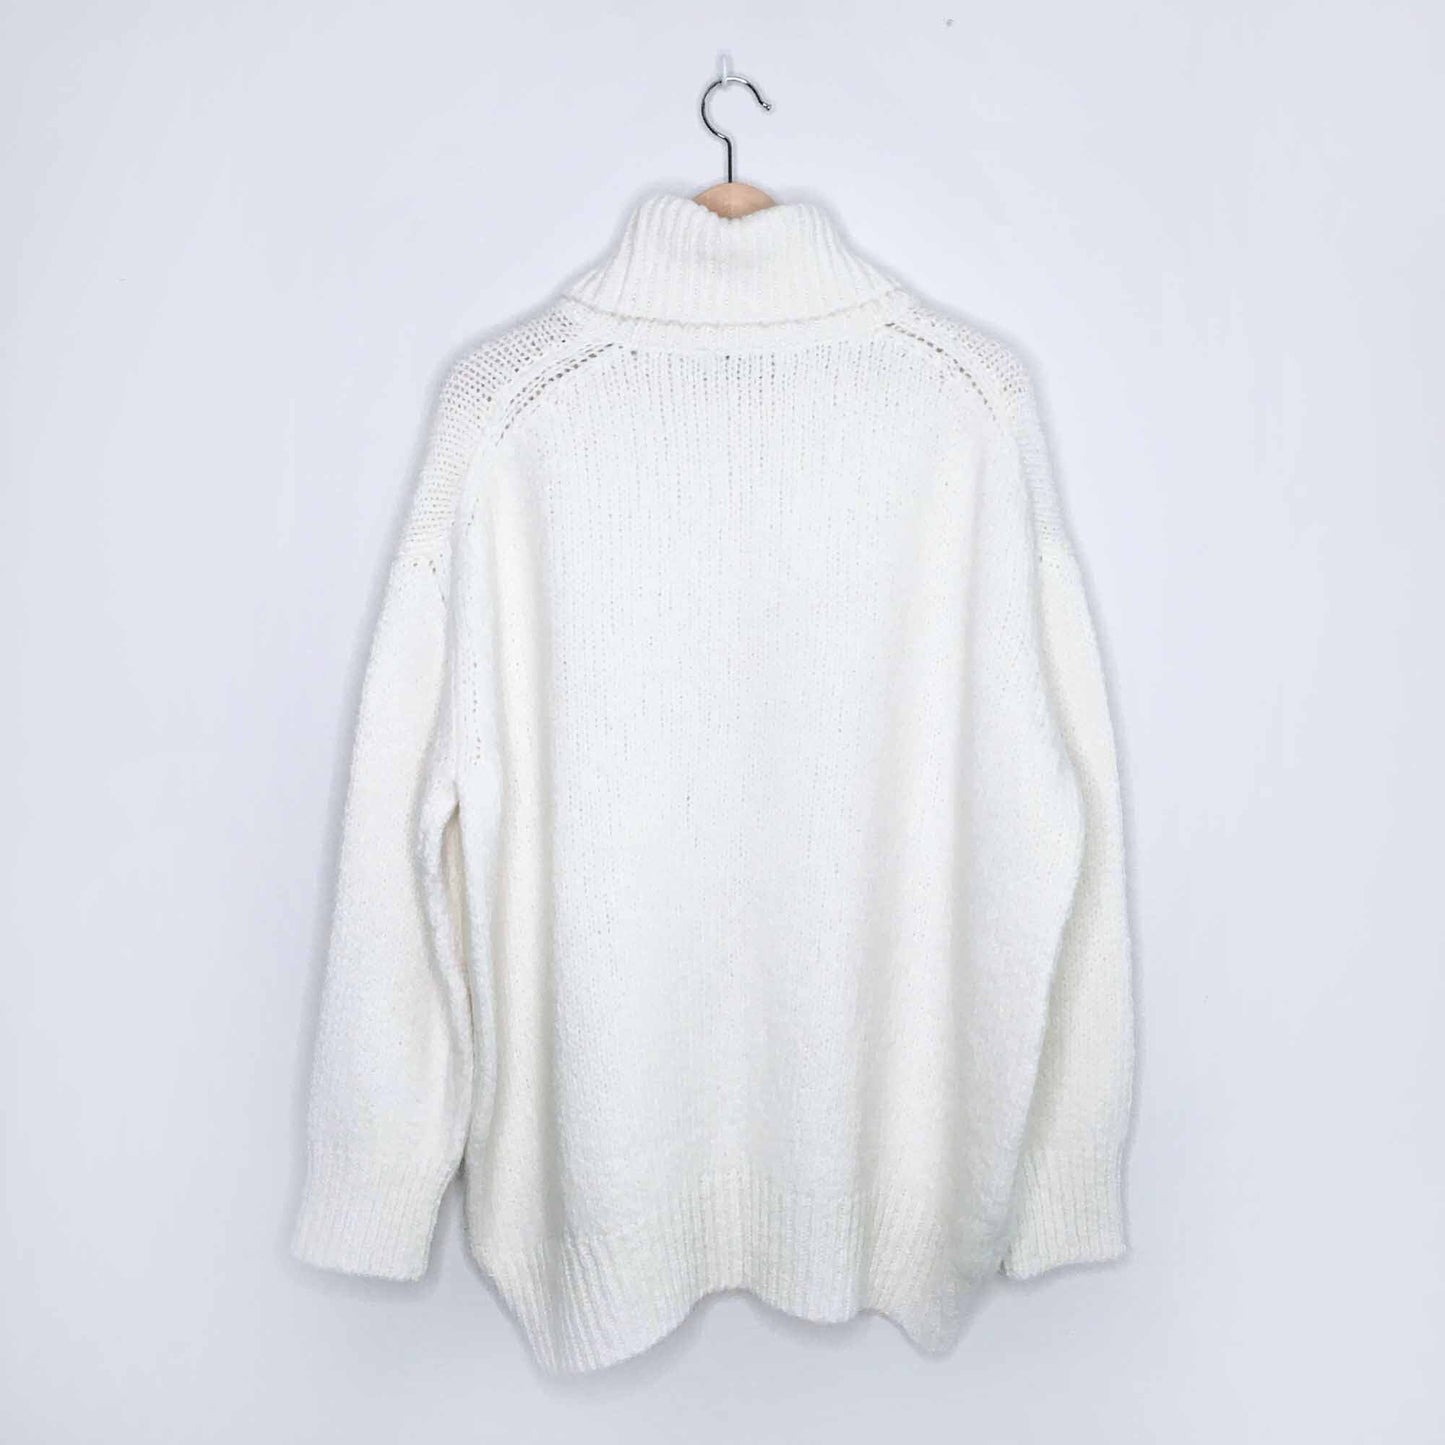 Mango Egeo oversized turtleneck sweater - size SM/M